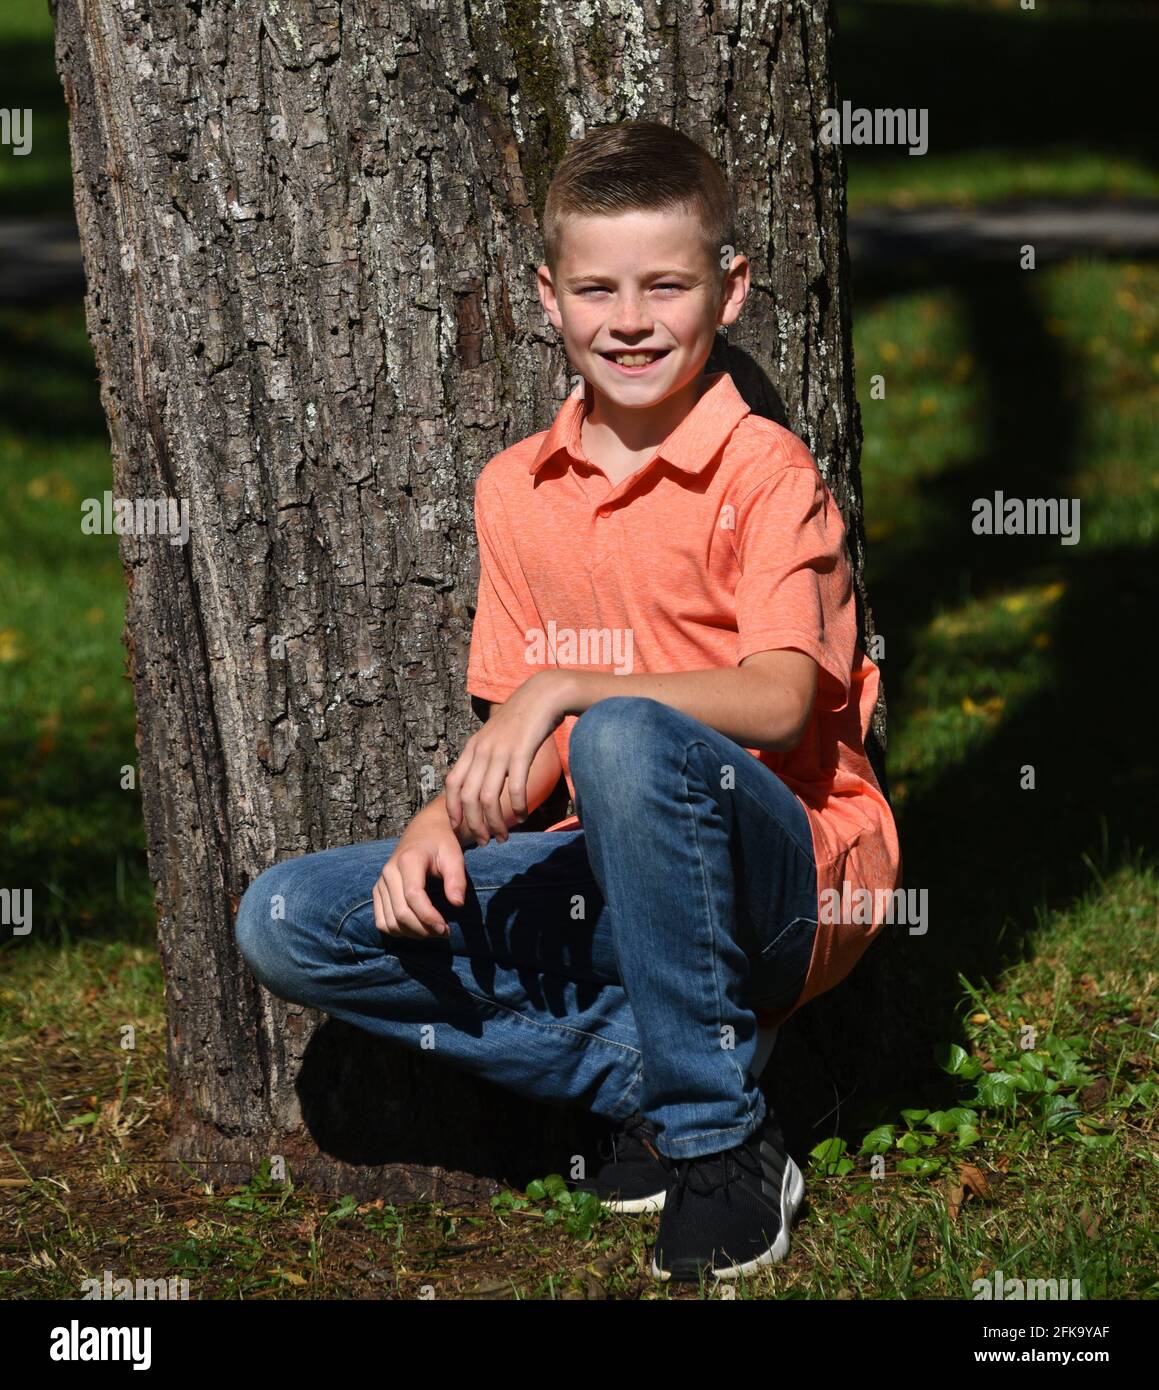 Il ragazzo dà un grin boyish mentre inginocchiandosi oltre ad un albero nel sole di mattina. Indossa jeans e una camicia in stile polo arancione. Foto Stock